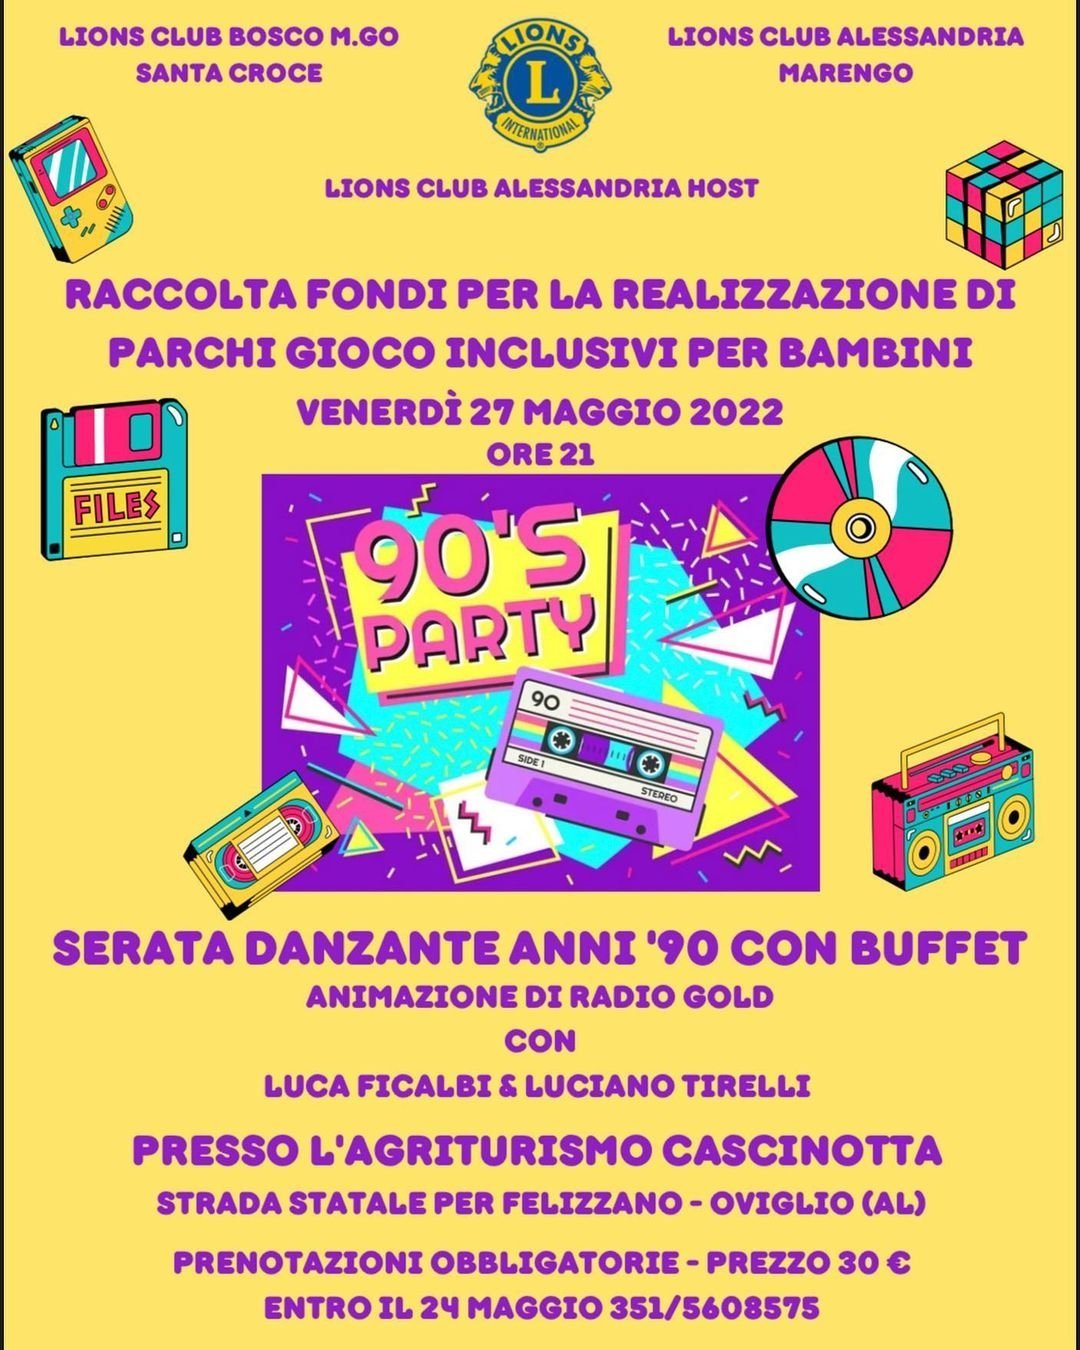 Il 27 maggio la serata “90’s Party” per allestire parchi giochi inclusivi